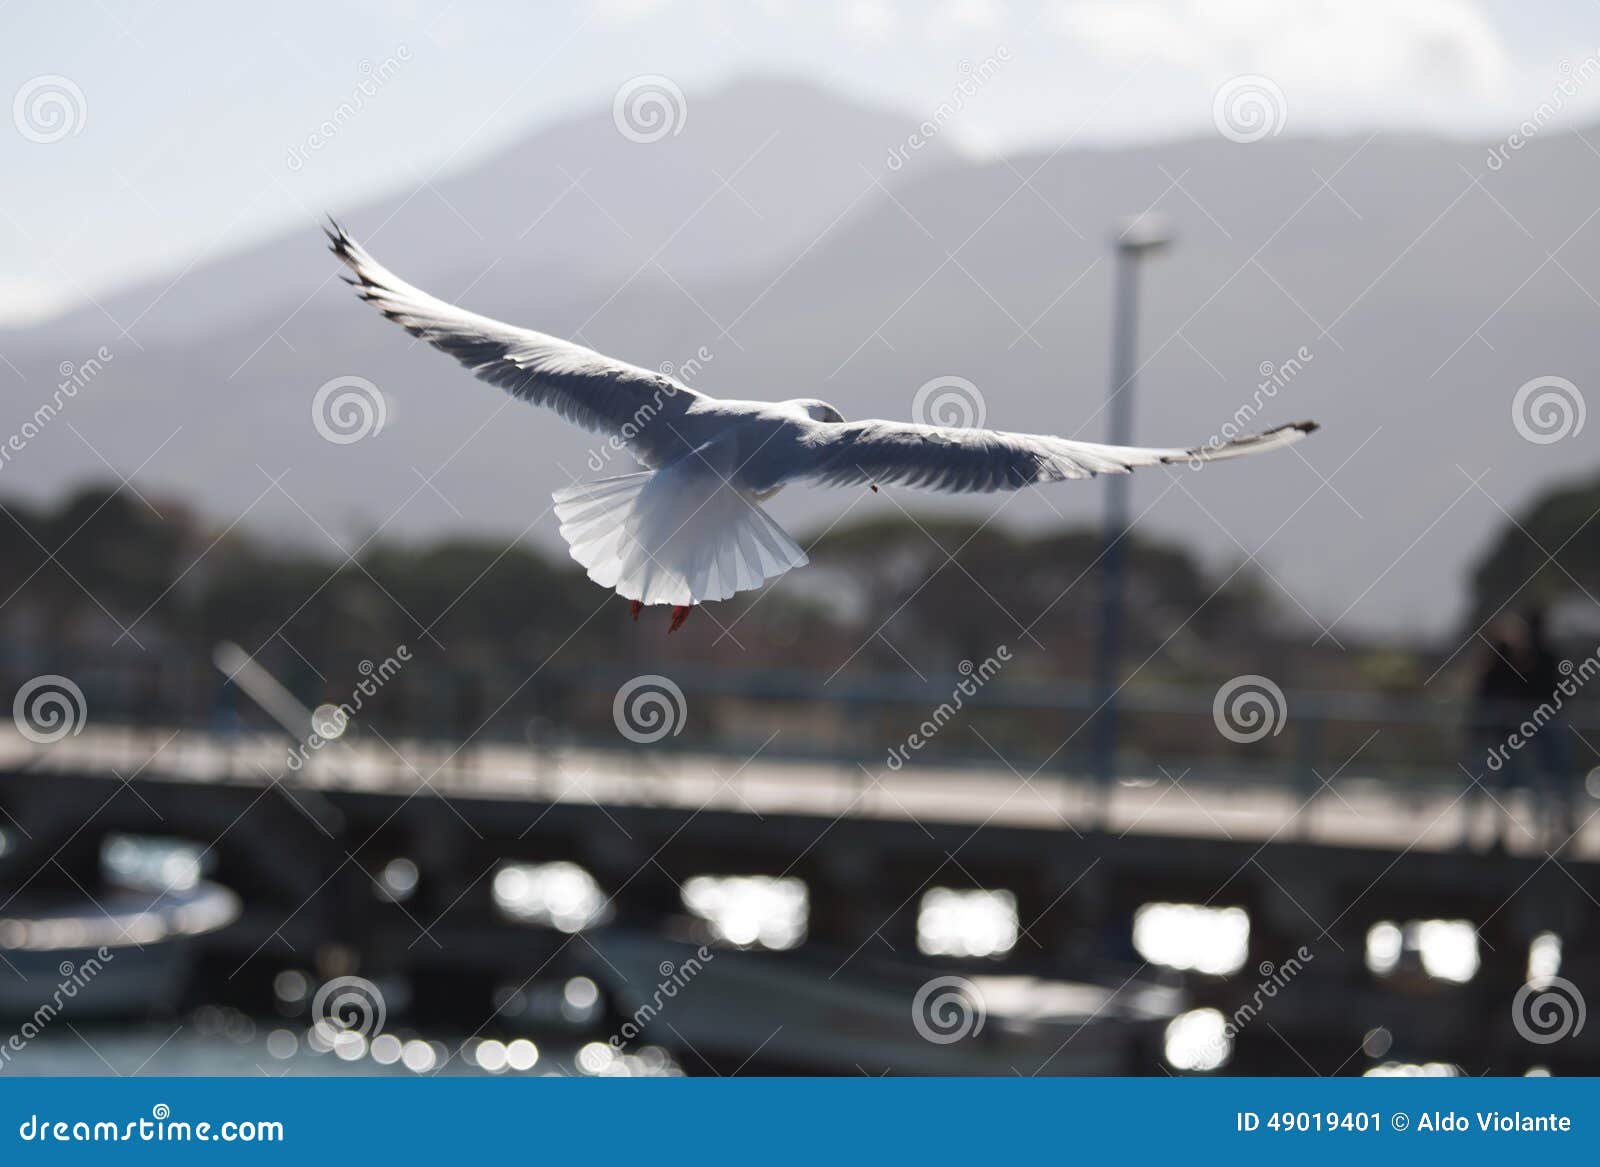 gabbiano in volo ad ali aperte seagull in flight with open wings